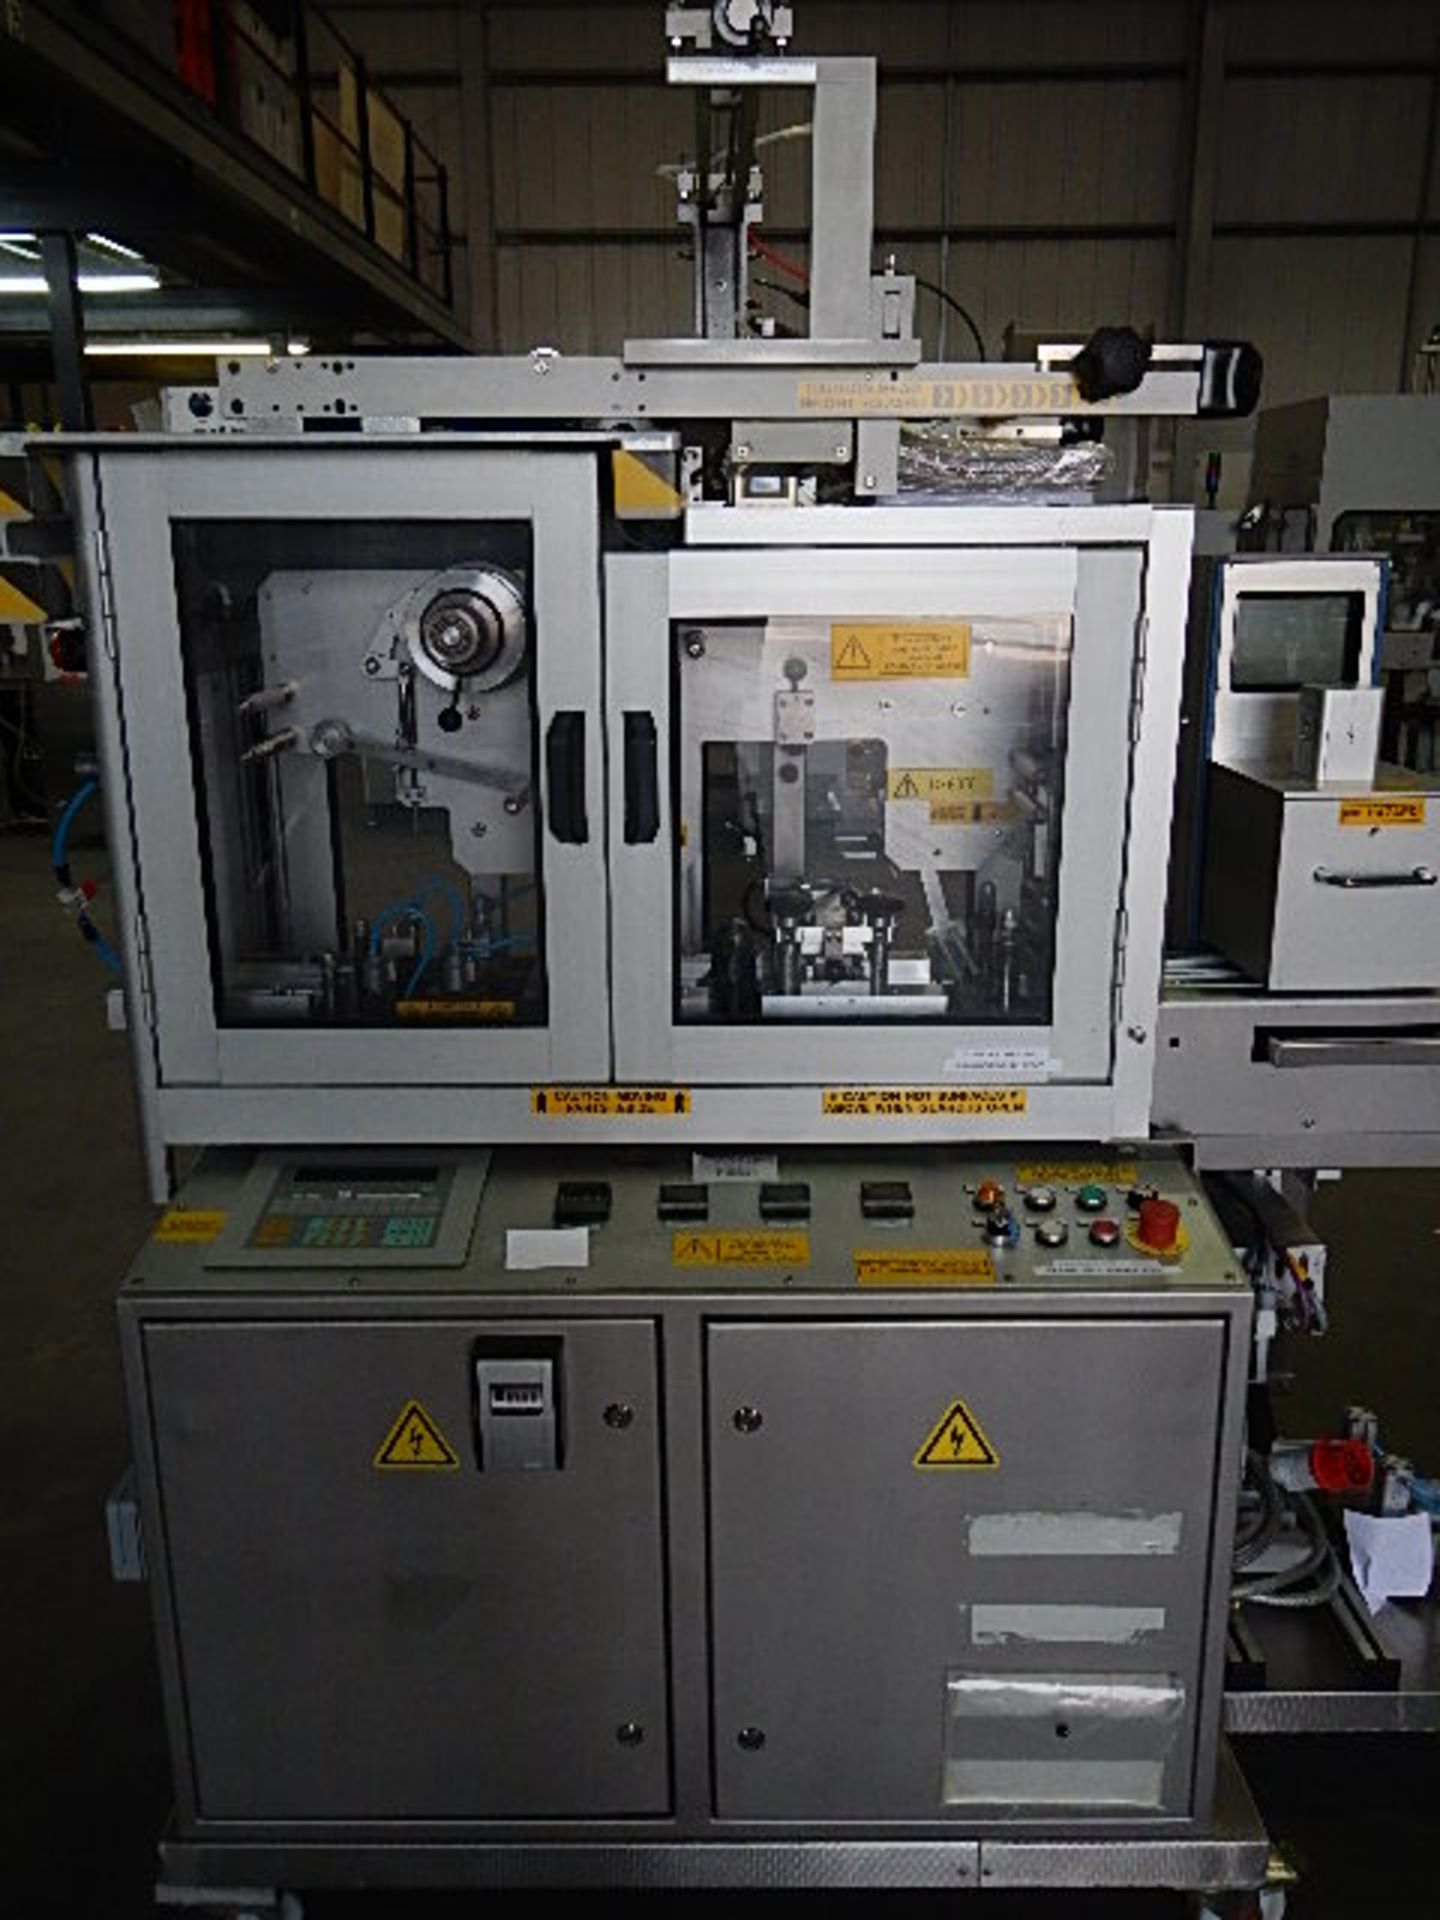 Klockner model EAS 1001 Unit-Dose blister packaging machine designed for pharmaceutical and - Image 20 of 25